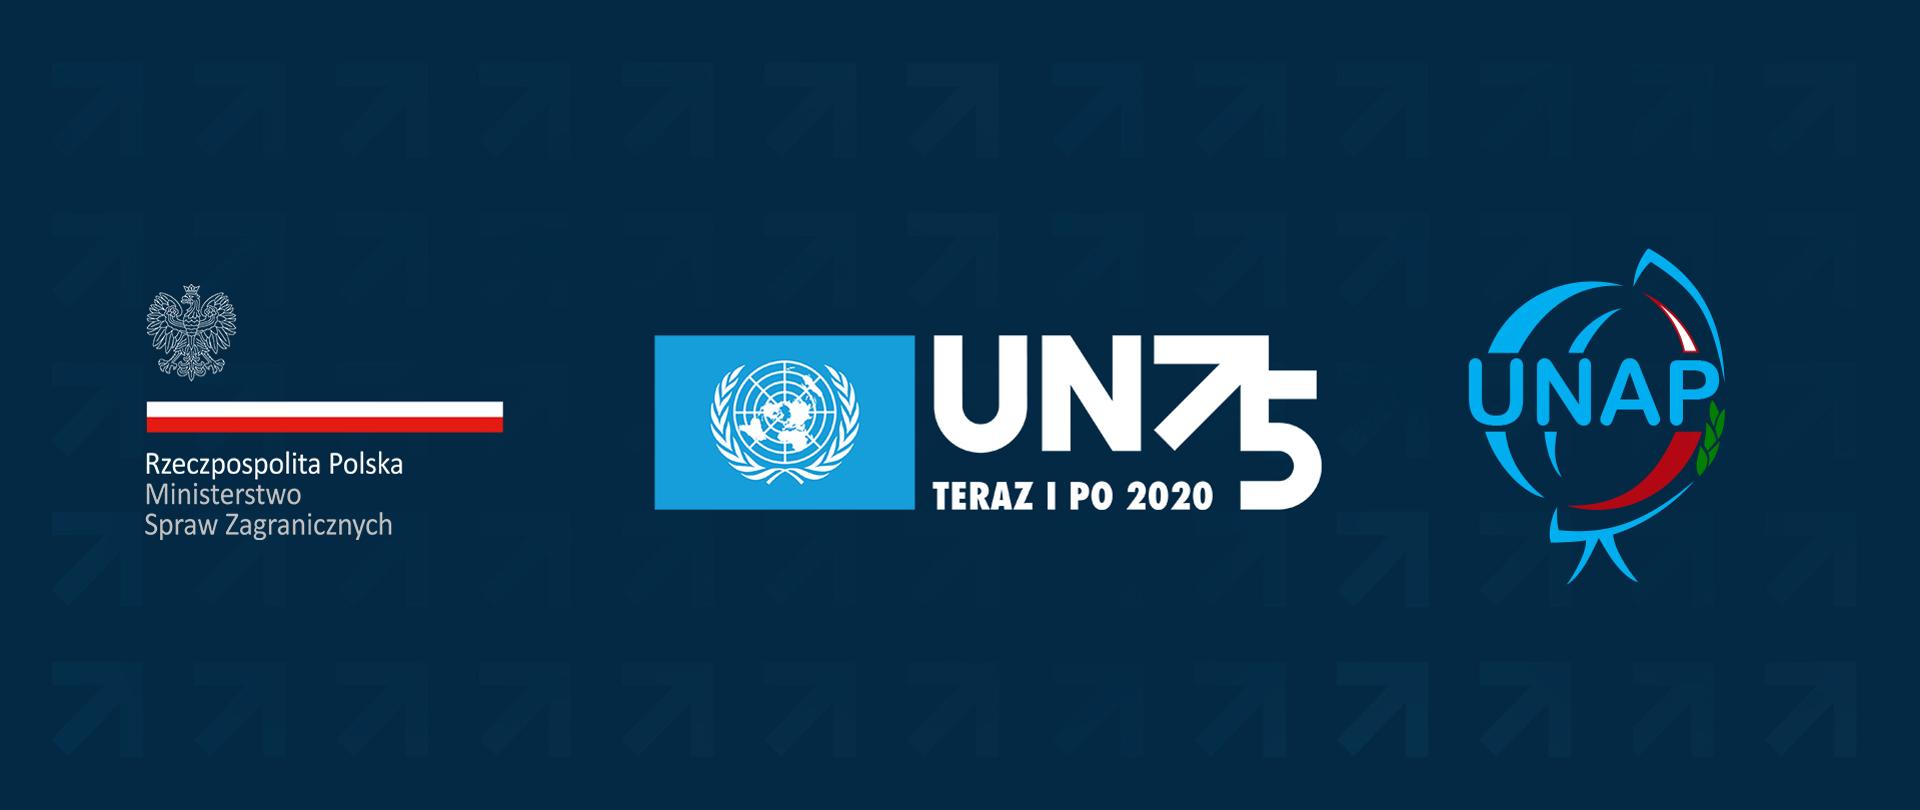 Logotypy MSZ oraz ONZ